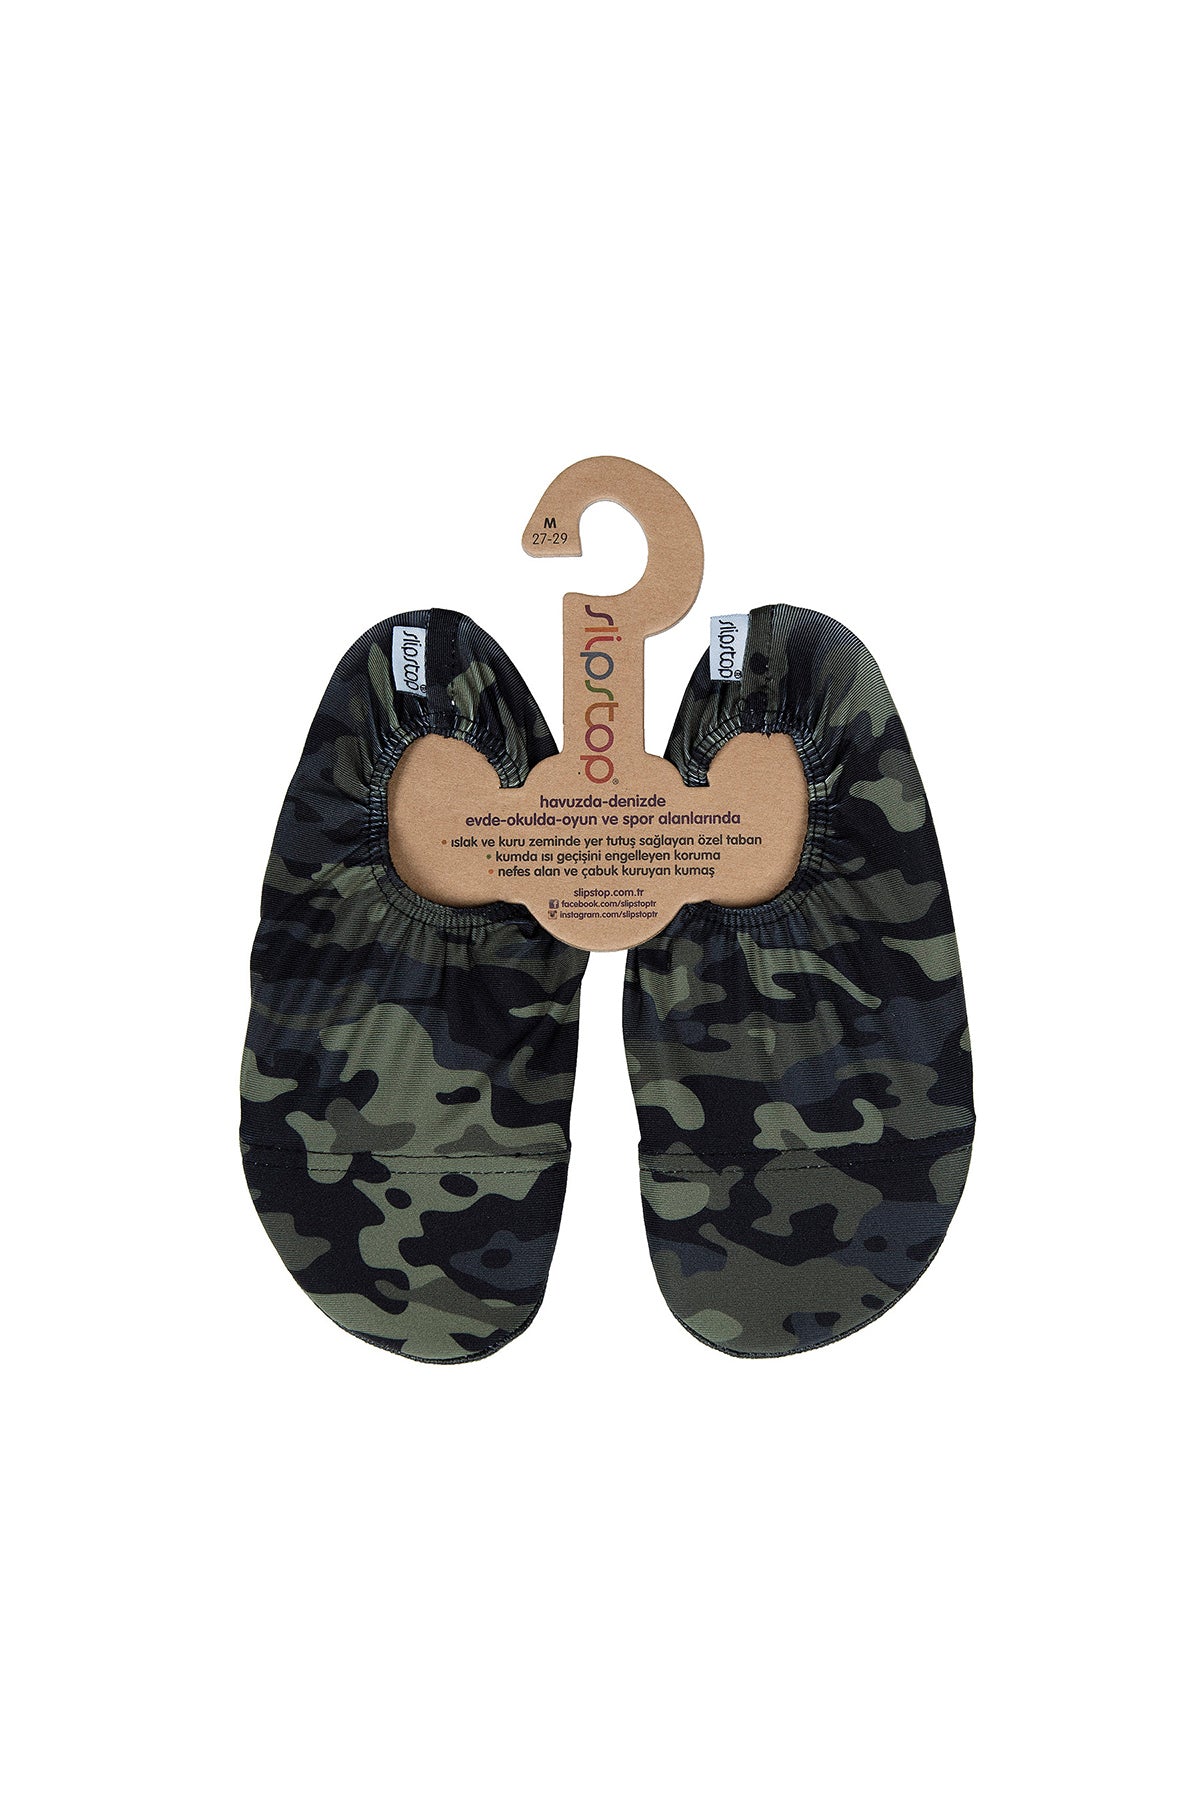 Slipstop Army Junior Kaydırmaz Havuz ve Deniz sı Çocuk Ayakkabı SS18120179 KAMUFLAJ